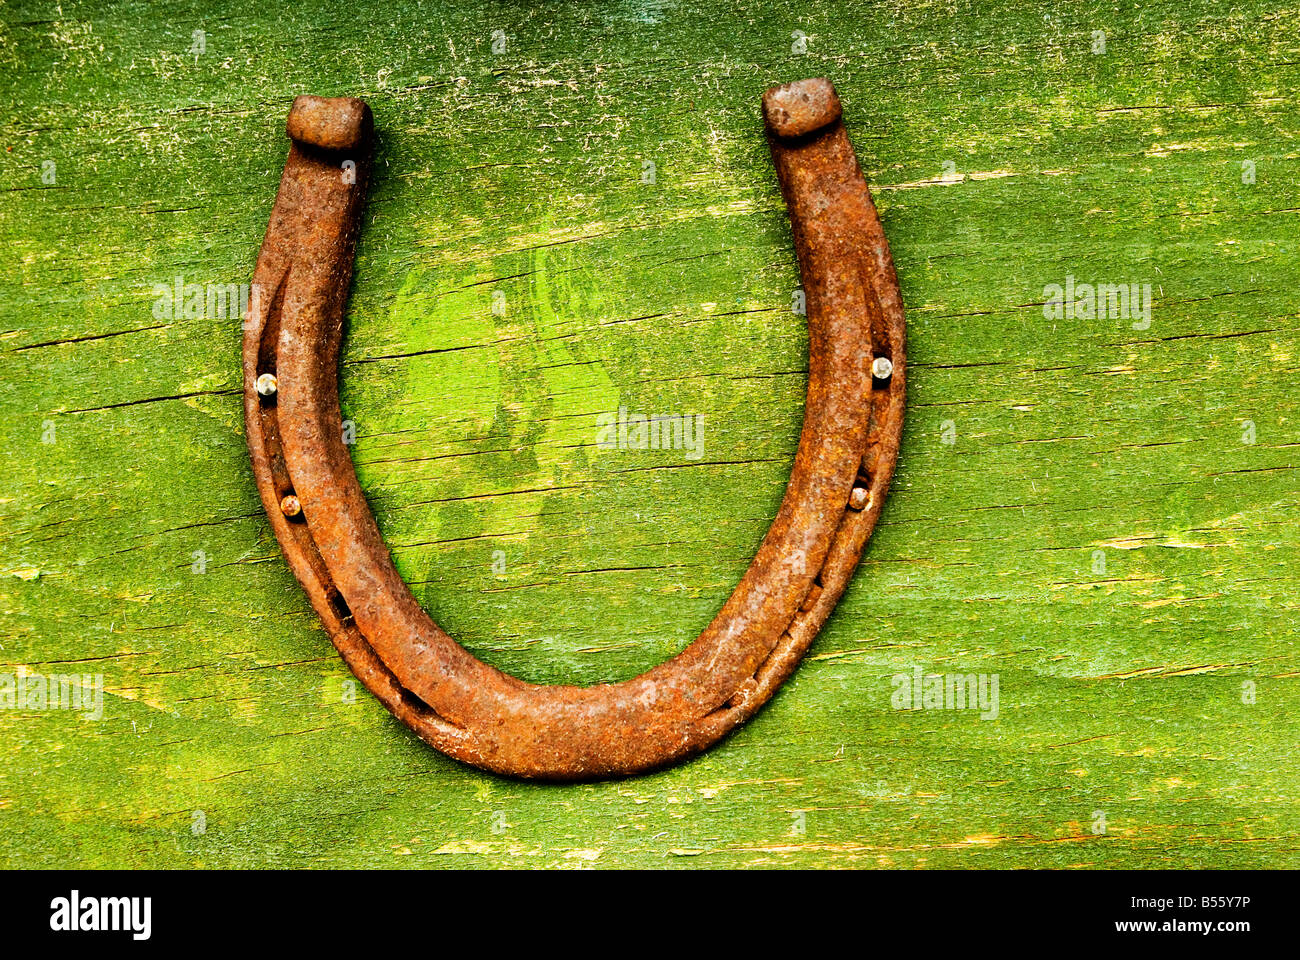 Una herradura clavada en una superficie de madera verde. Foto de stock